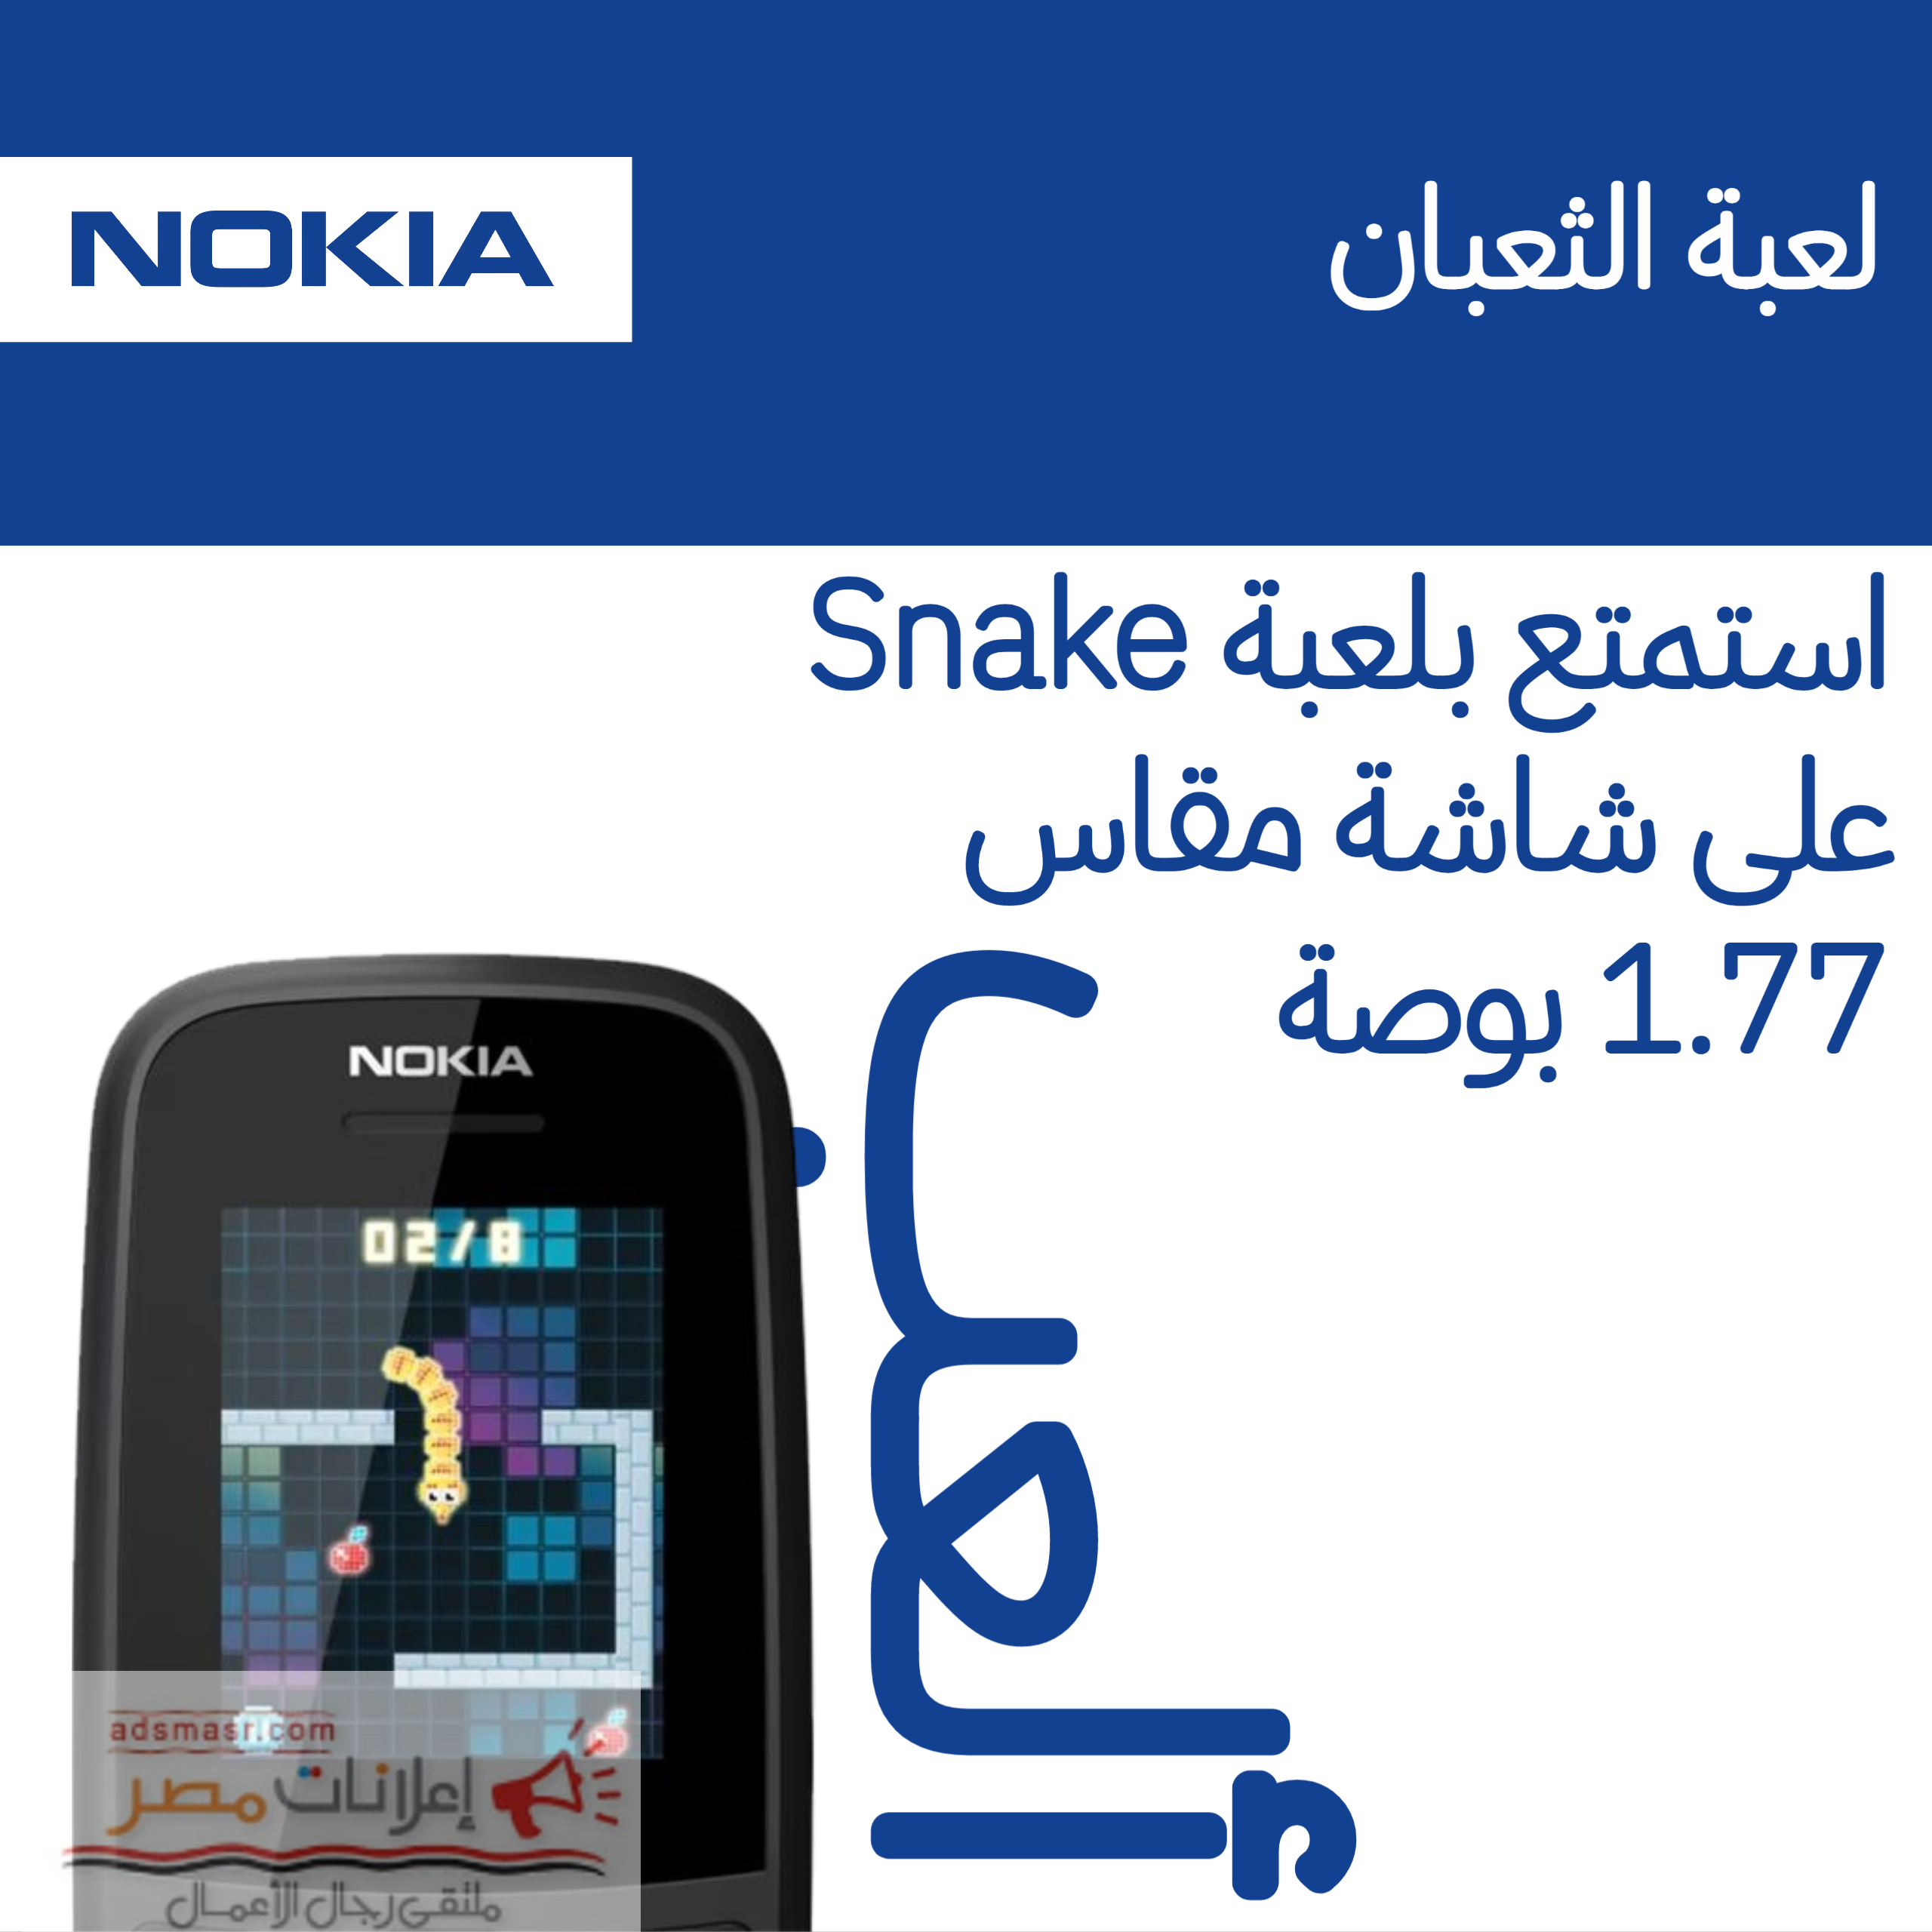 Nokia 105 تليفون